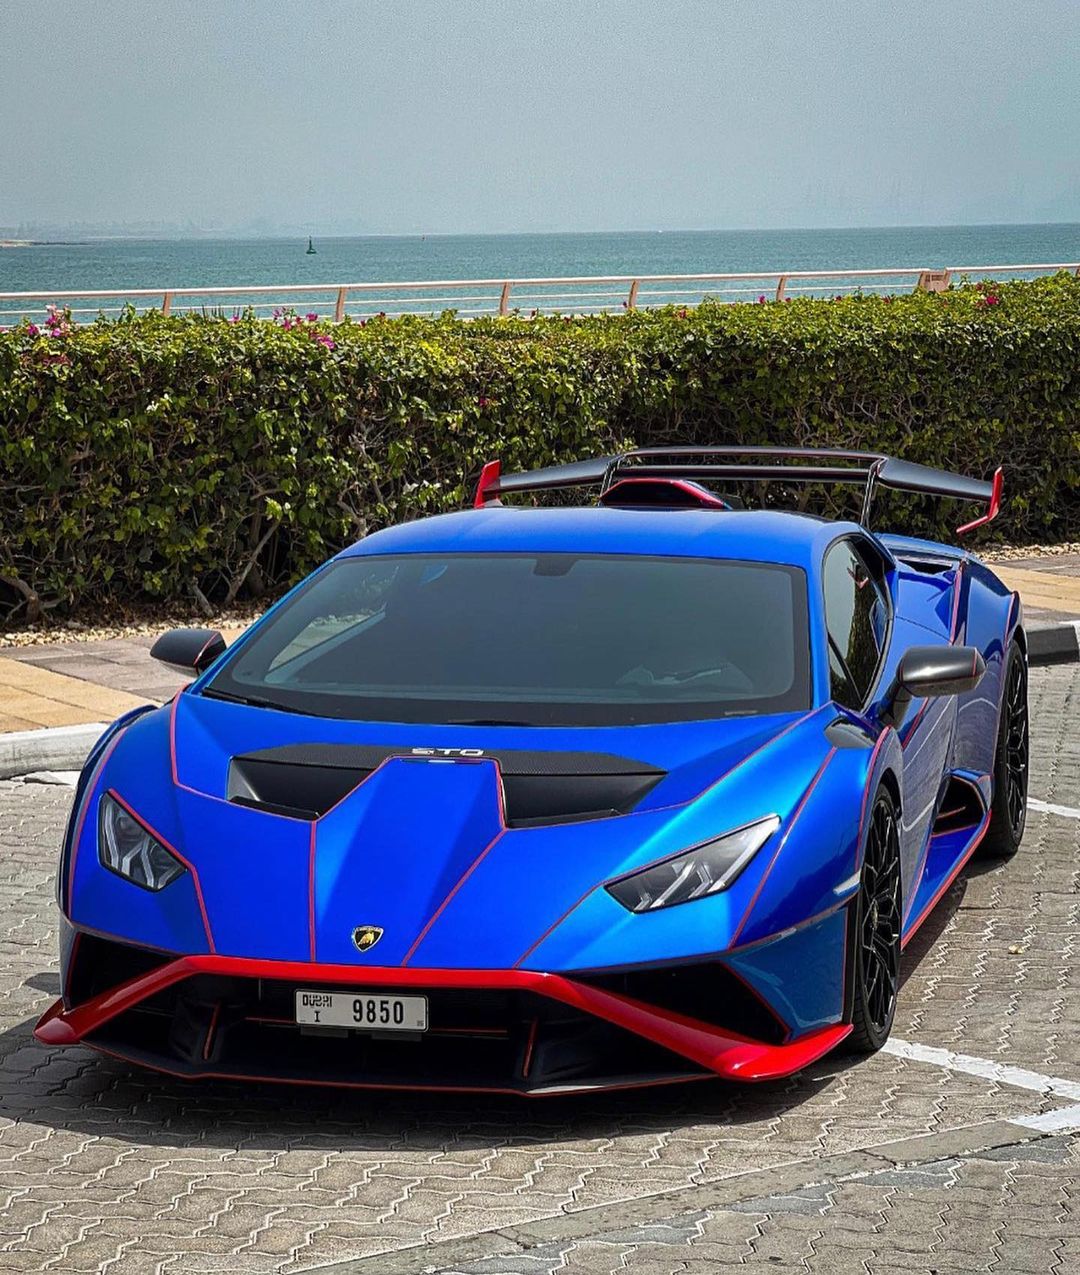 Lamborghini Huracan STO rental dubai – Rent Lamborghini Dubai 01